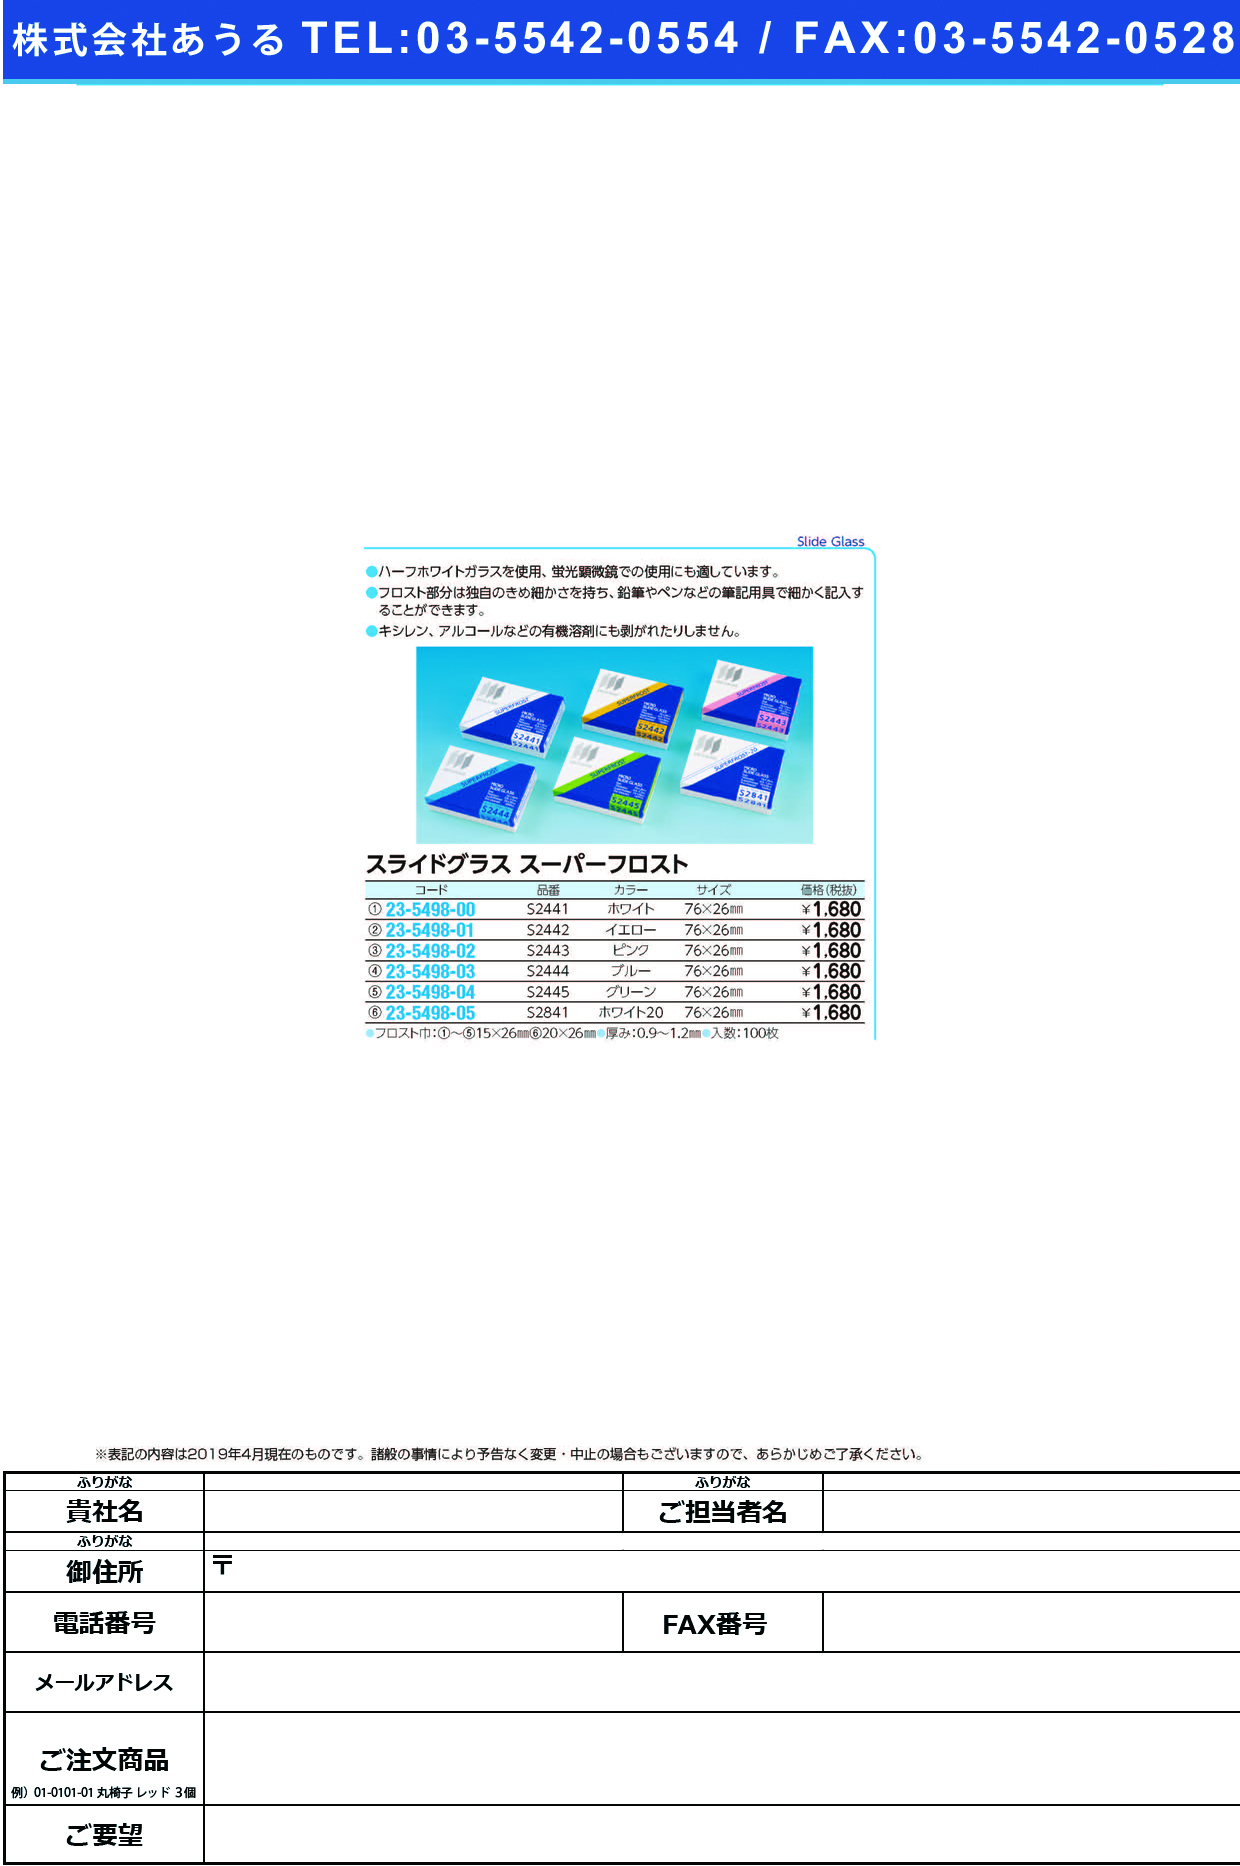 (23-5498-04)松浪スライドグラススーパーフロスト S2445(ｸﾞﾘｰﾝ)100ﾏｲ ﾏﾂﾅﾐｽﾗｲﾄﾞｸﾞﾗｽｽｰﾊﾟｰﾌﾛ【1箱単位】【2019年カタログ商品】